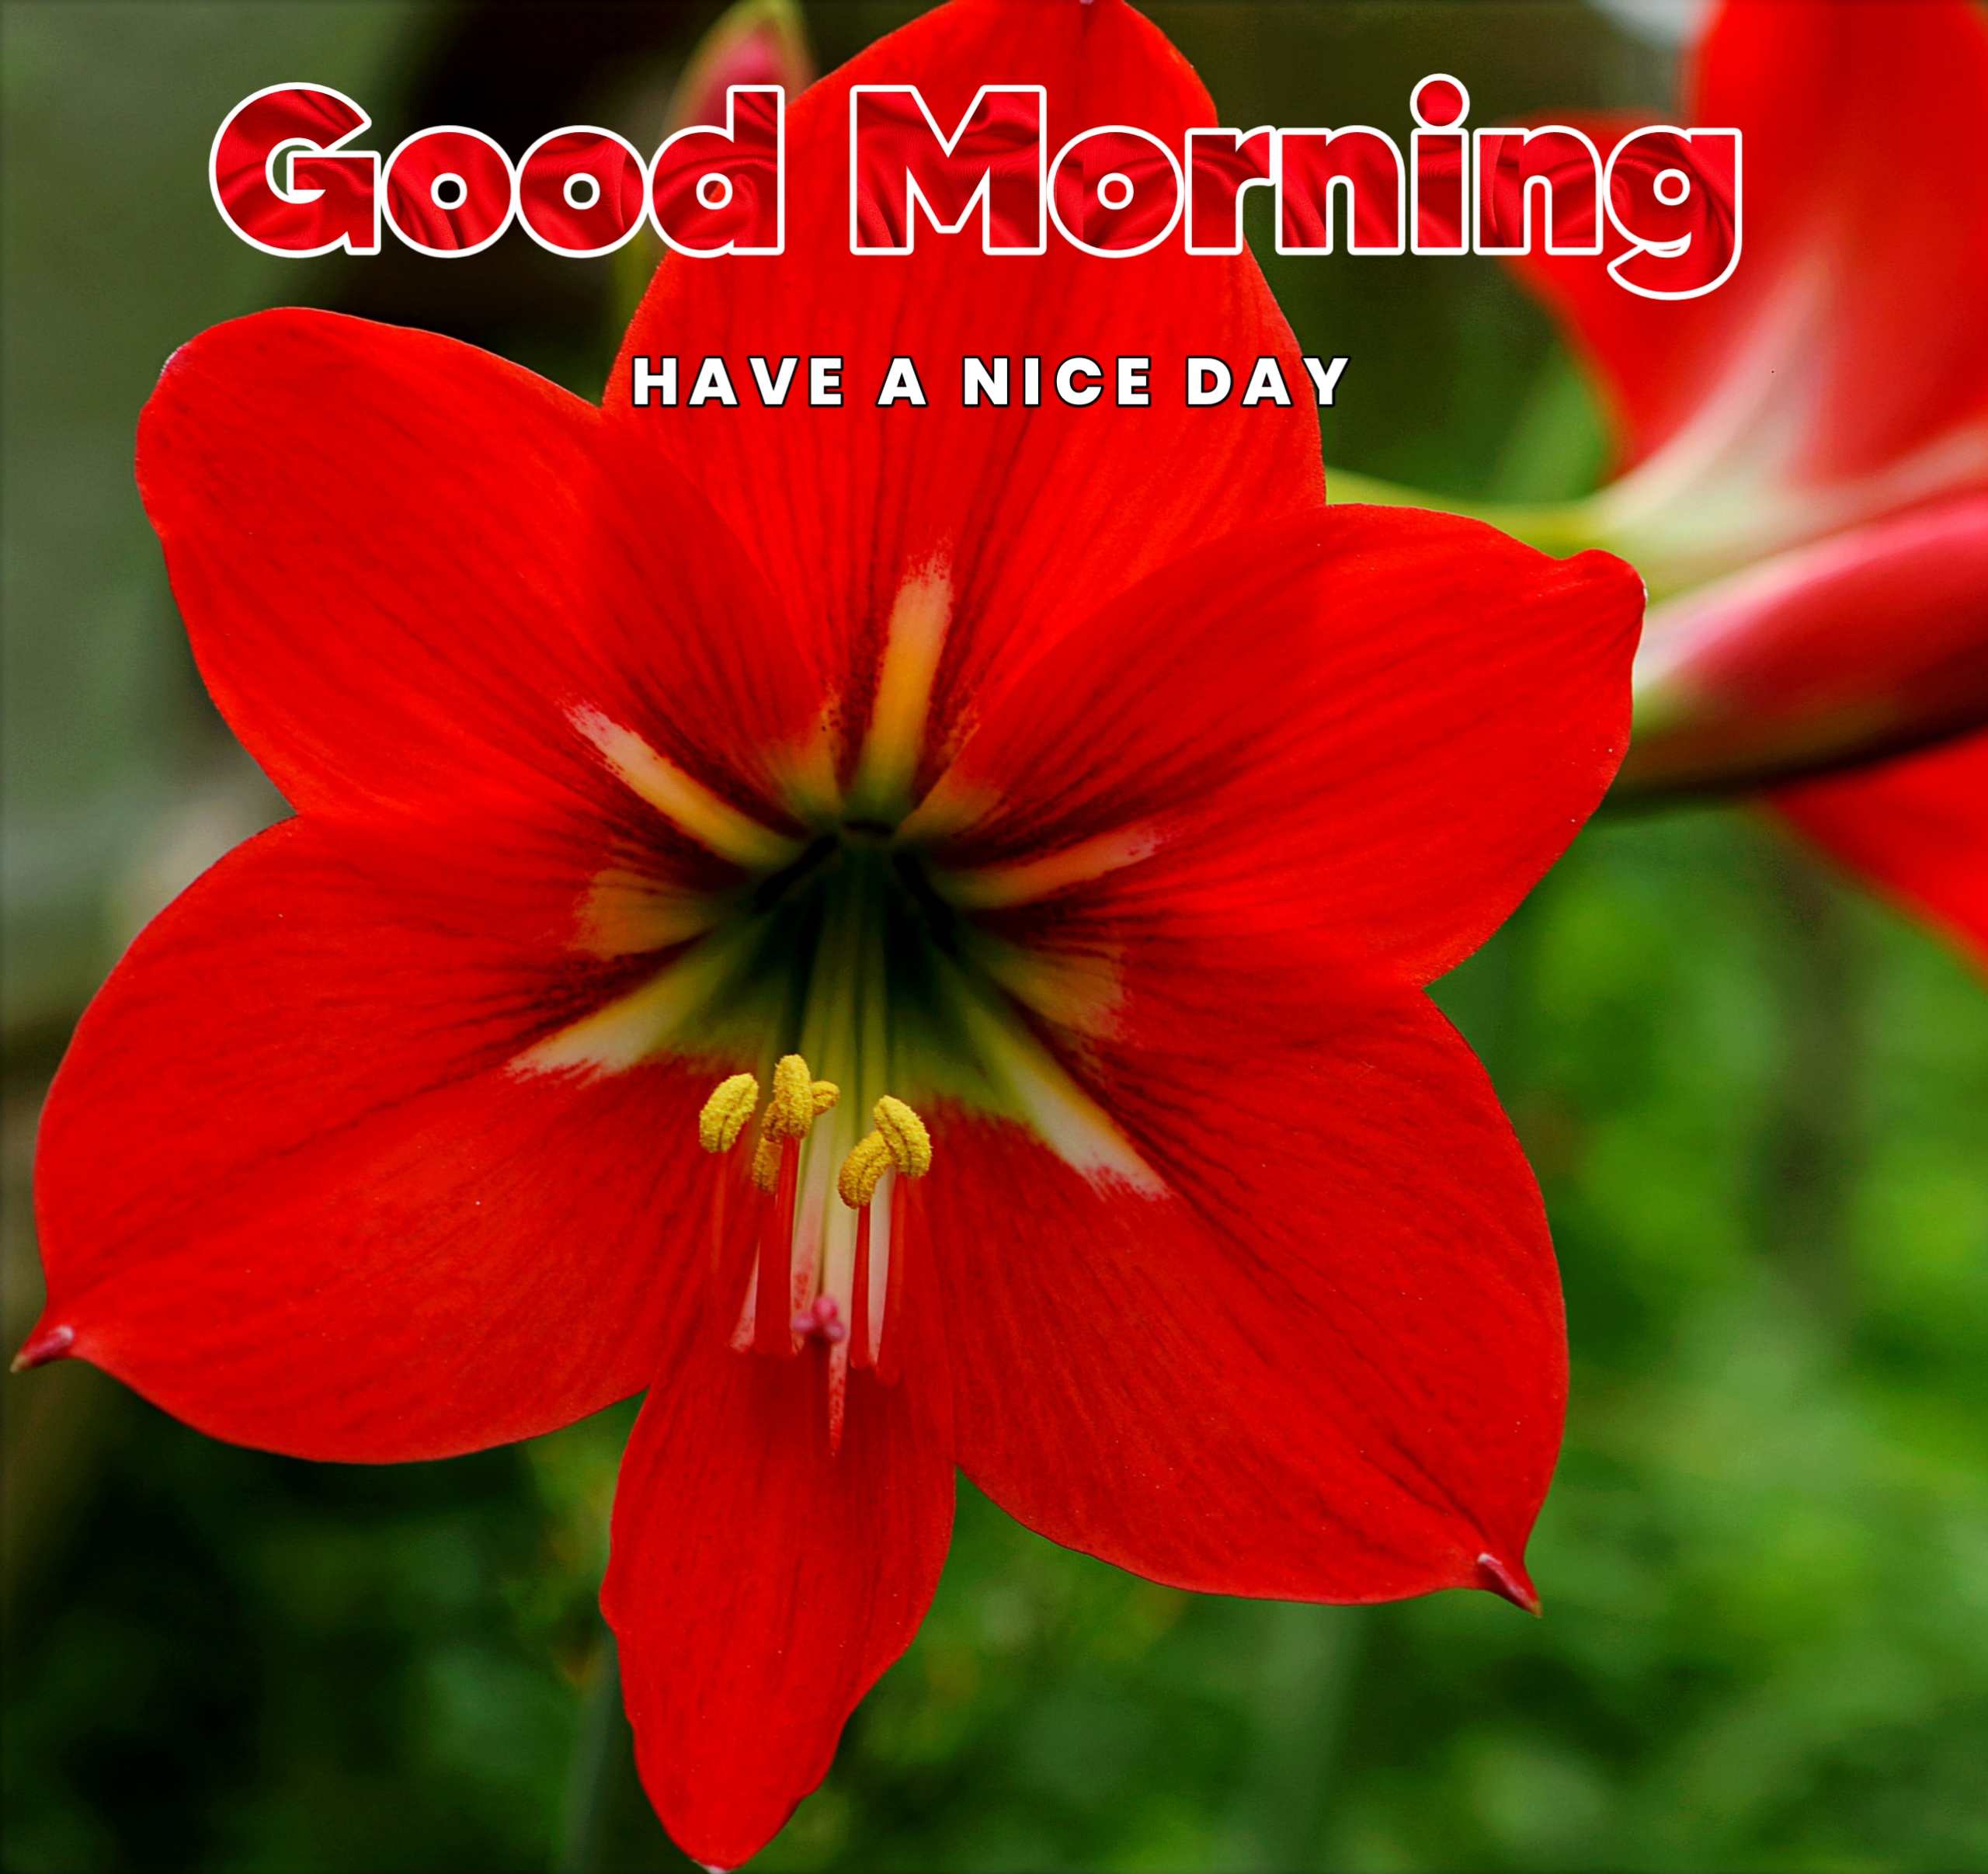 Amazing Red Flower Good Morning Image Photo 